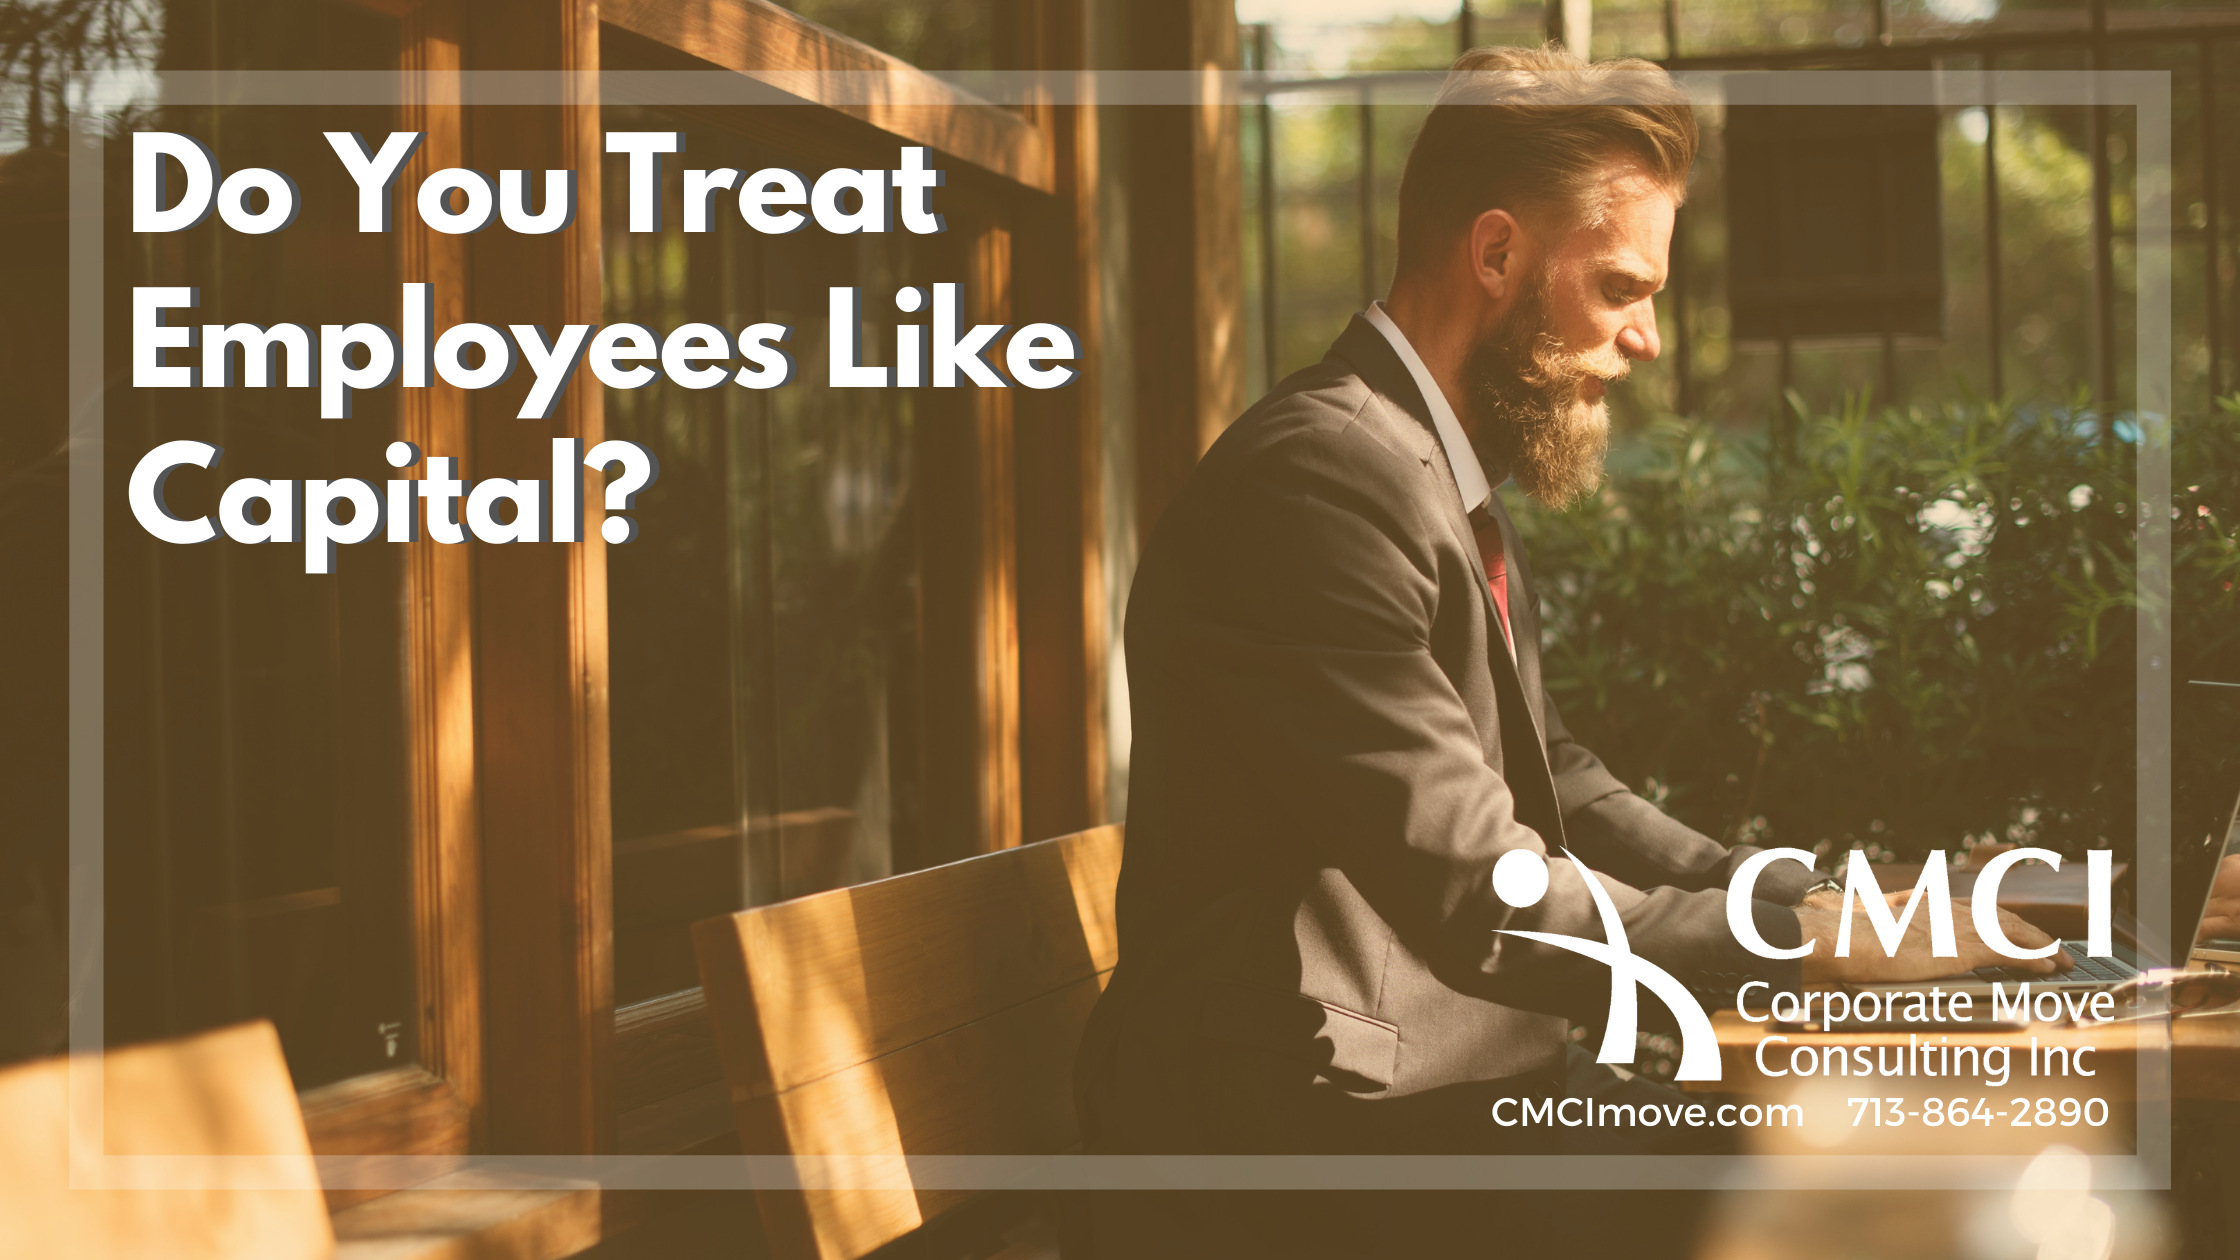 Do You Treat Employees Like Capital?